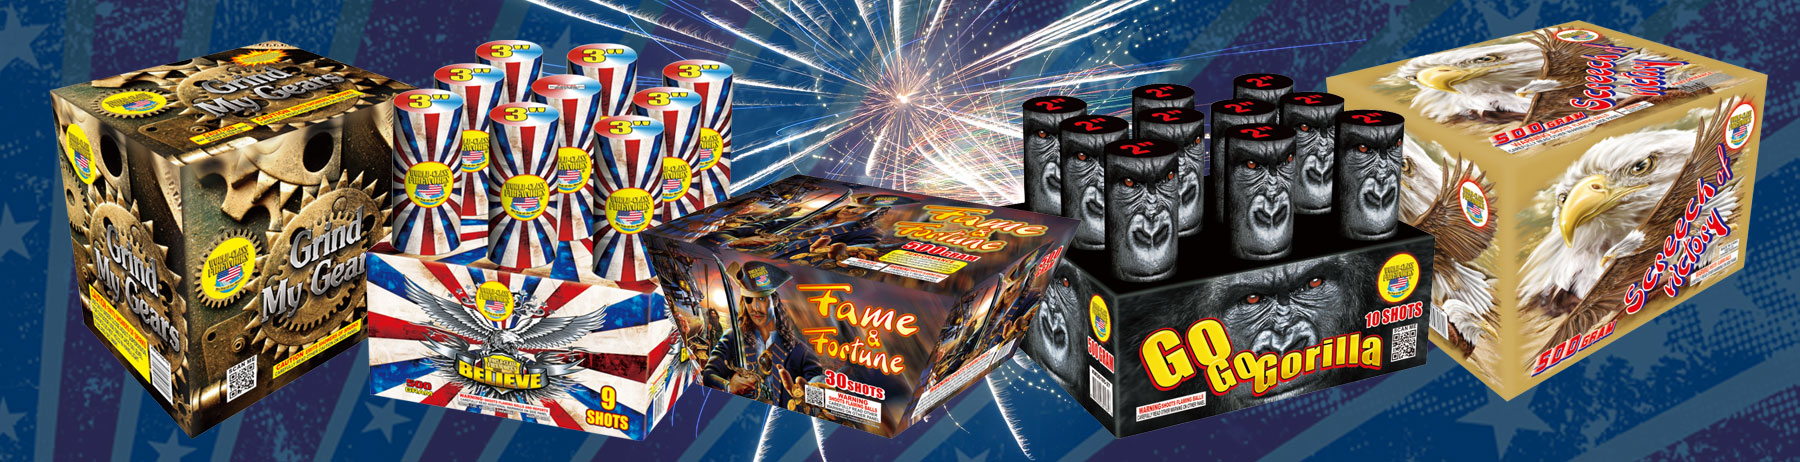 New Fireworks For 2016